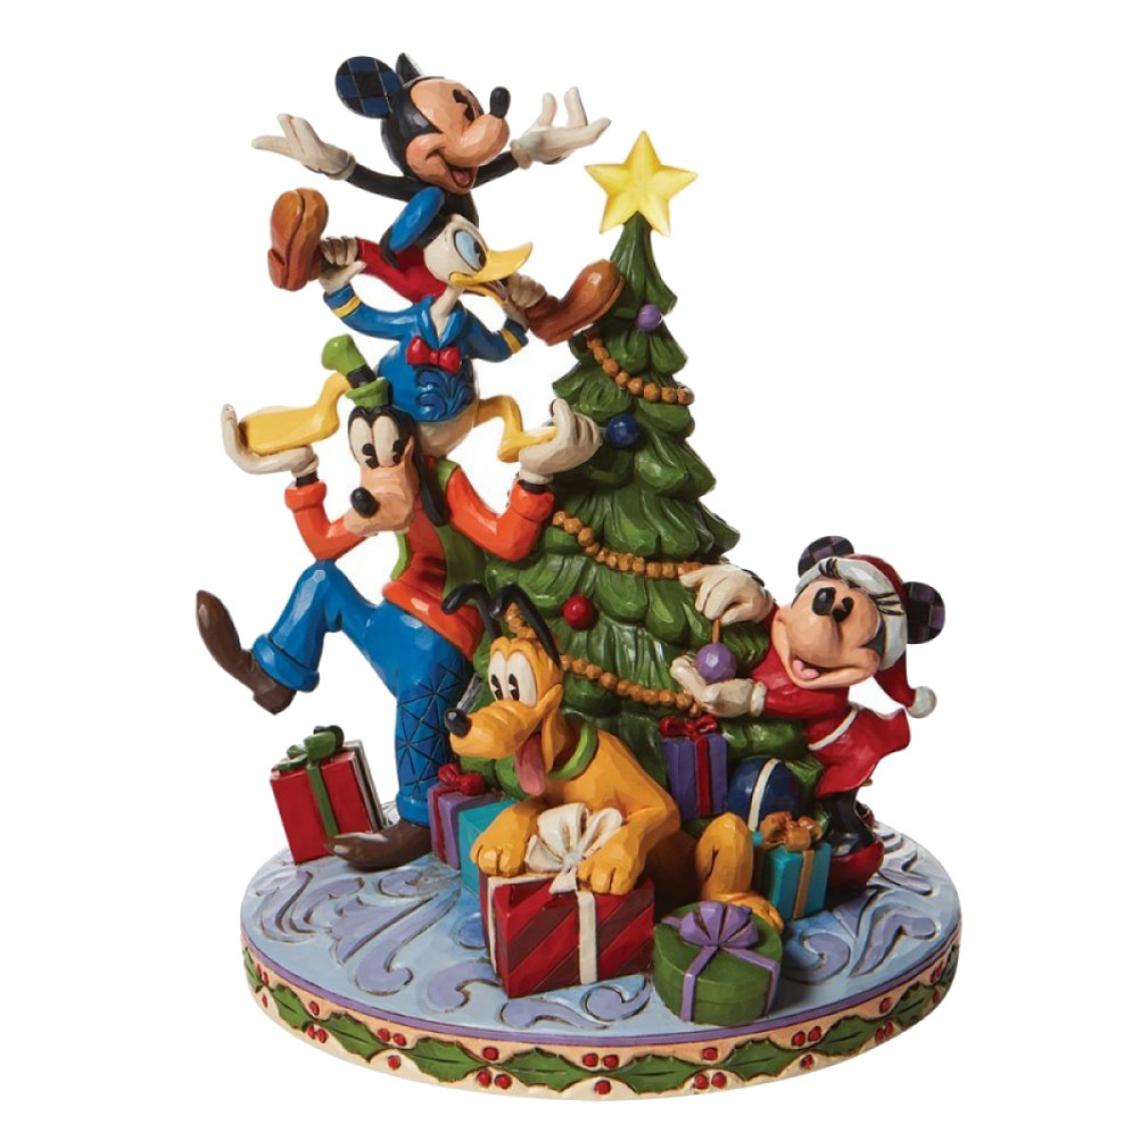 Enesco - Statuette de Collection Goofy, Donald, Mickey, Minnie et Pluto - Petite déco d'exterieur